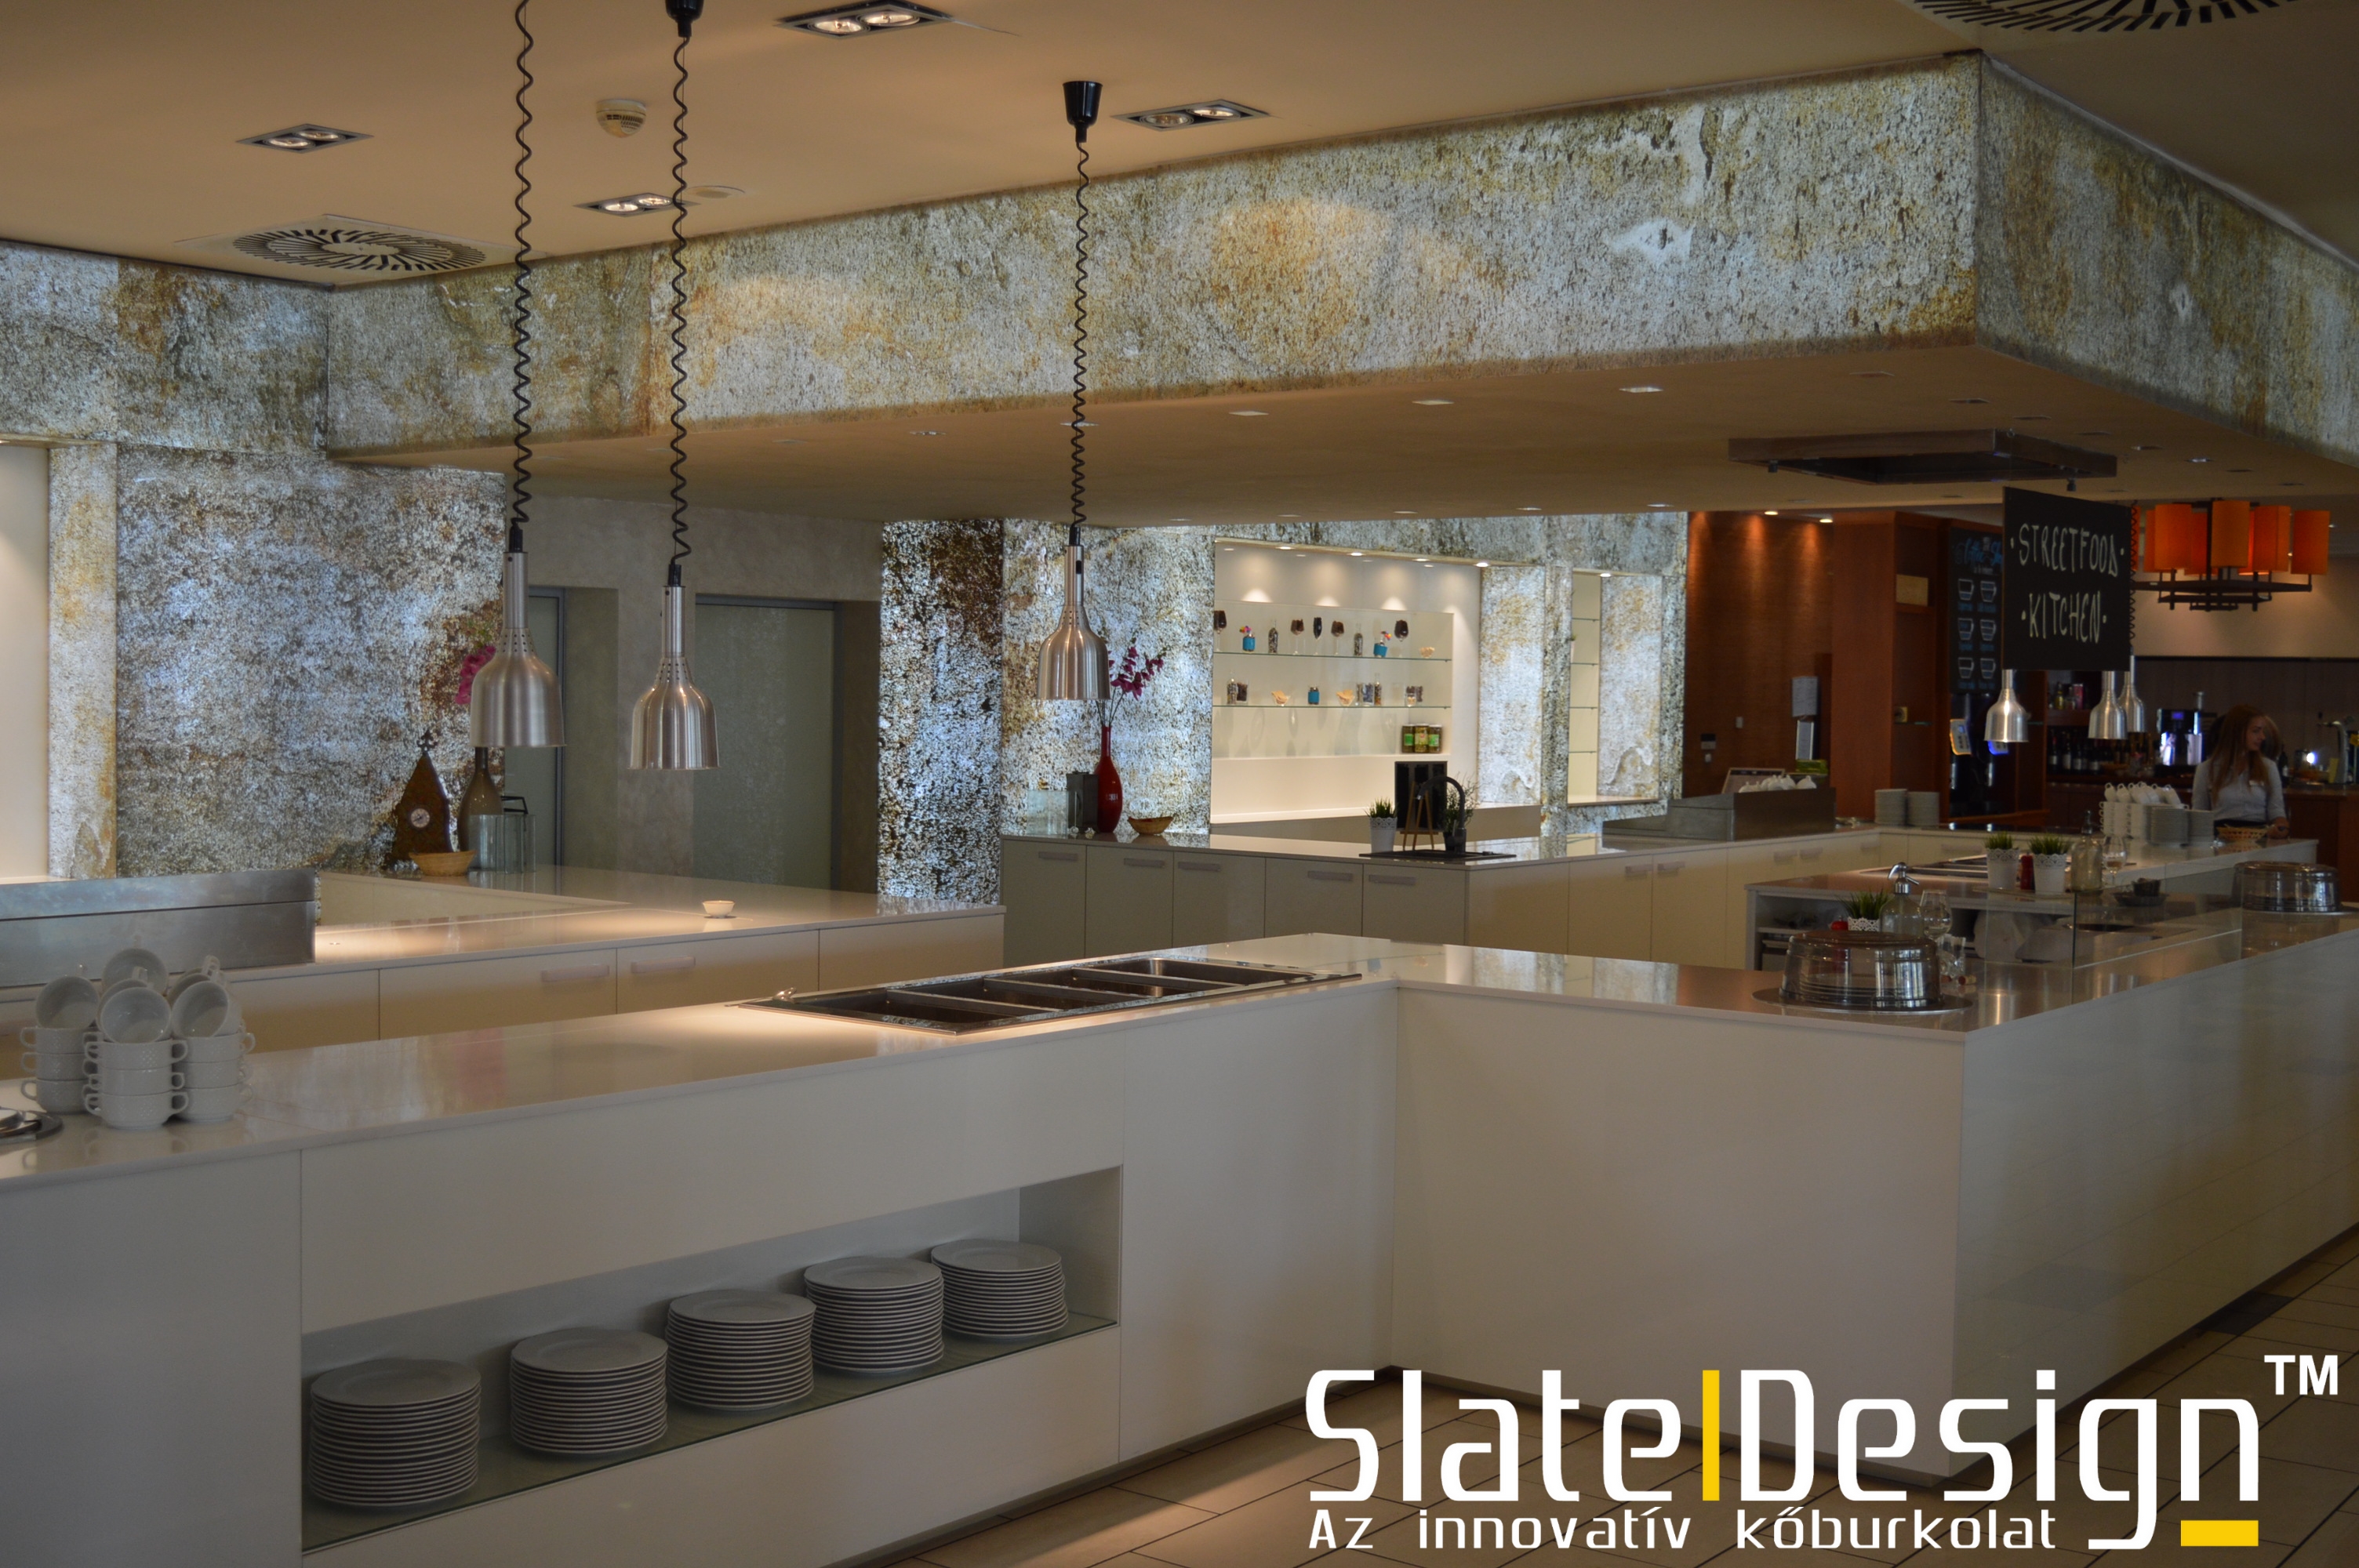 Átvilágítható Slate Design kőfurnér burkolatok alkalmazása szállodákban